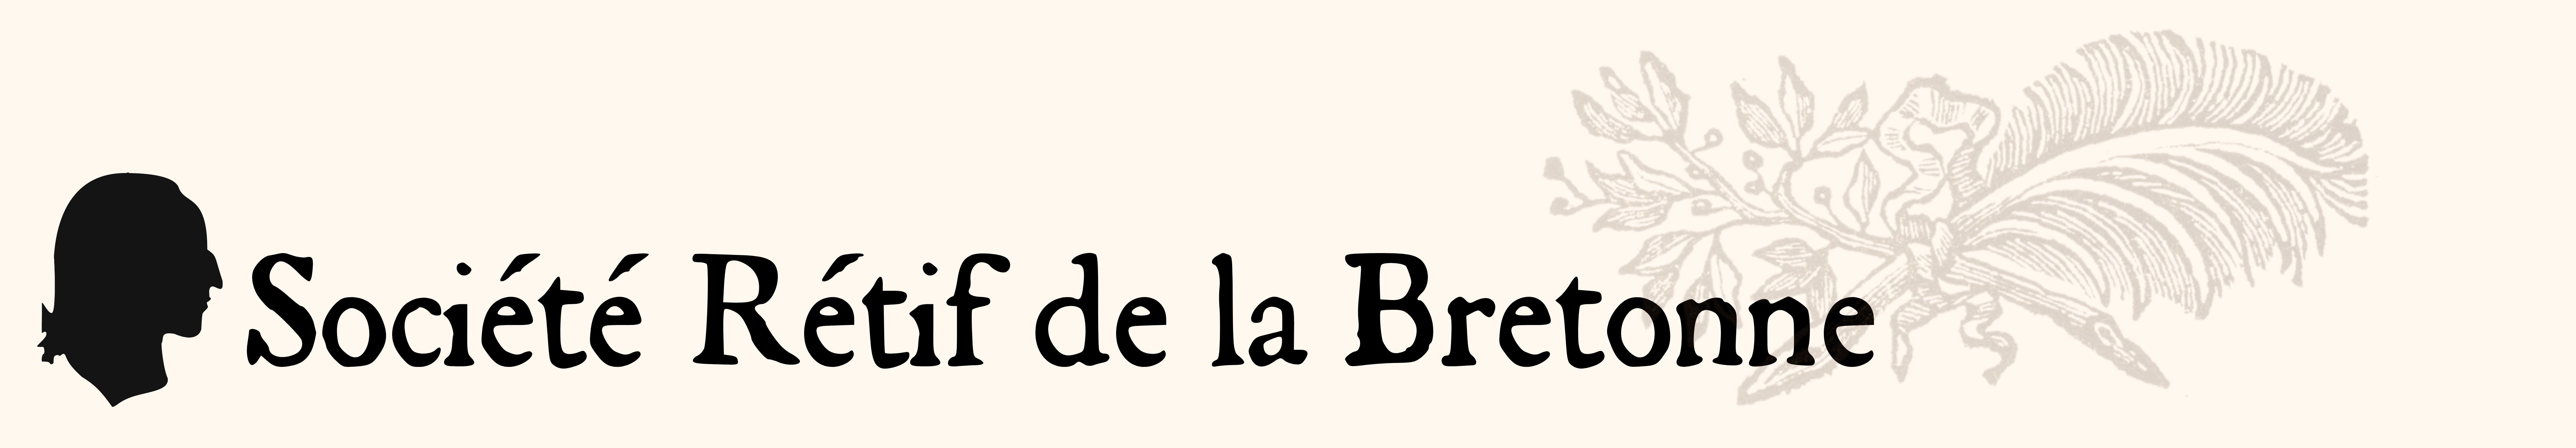 Société Rétif de la Bretonne